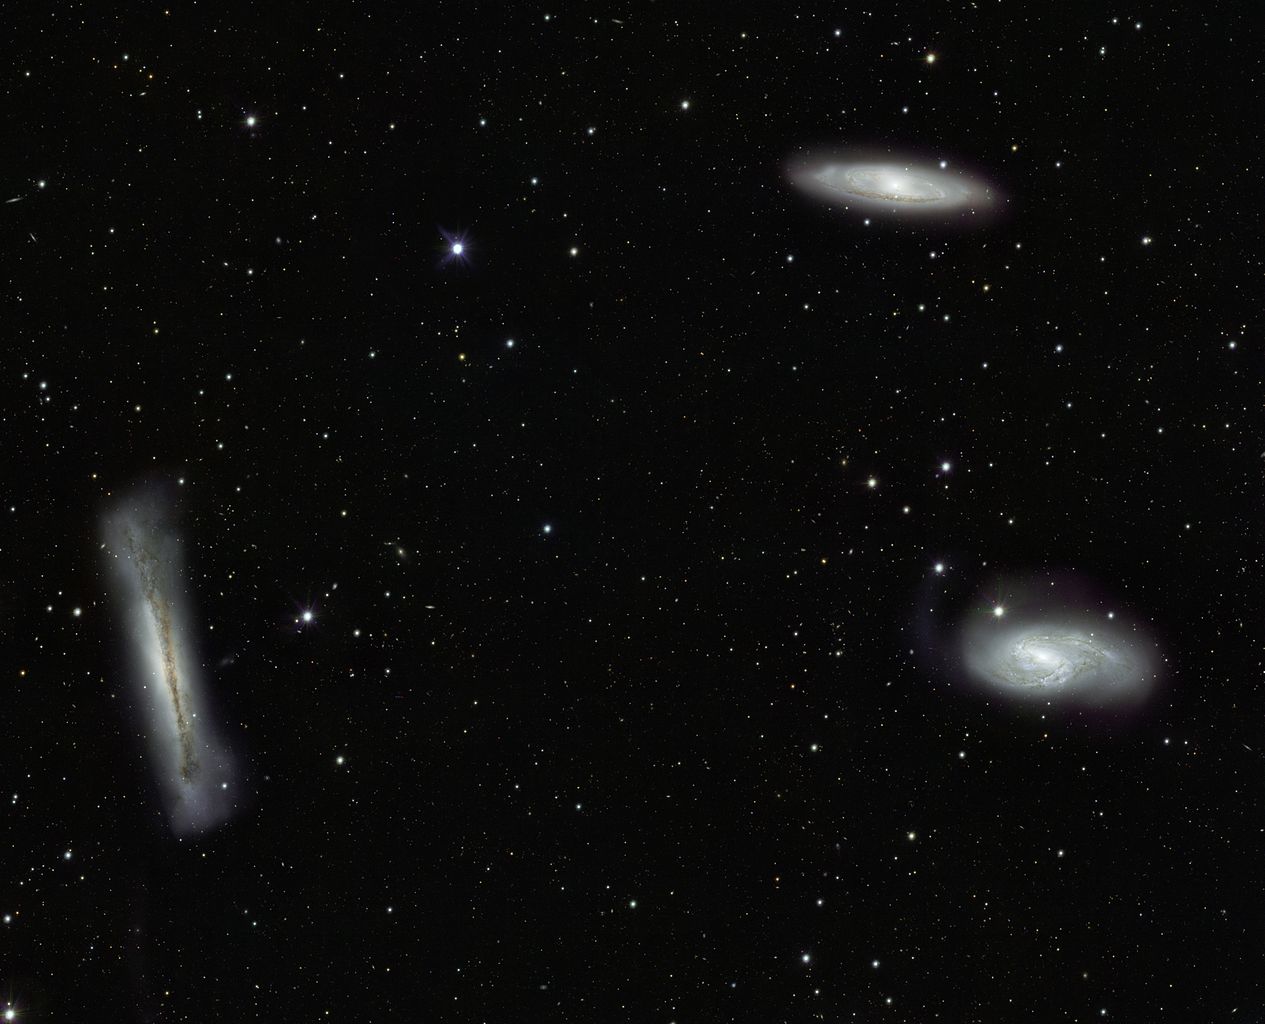 leo triplet of galaxies